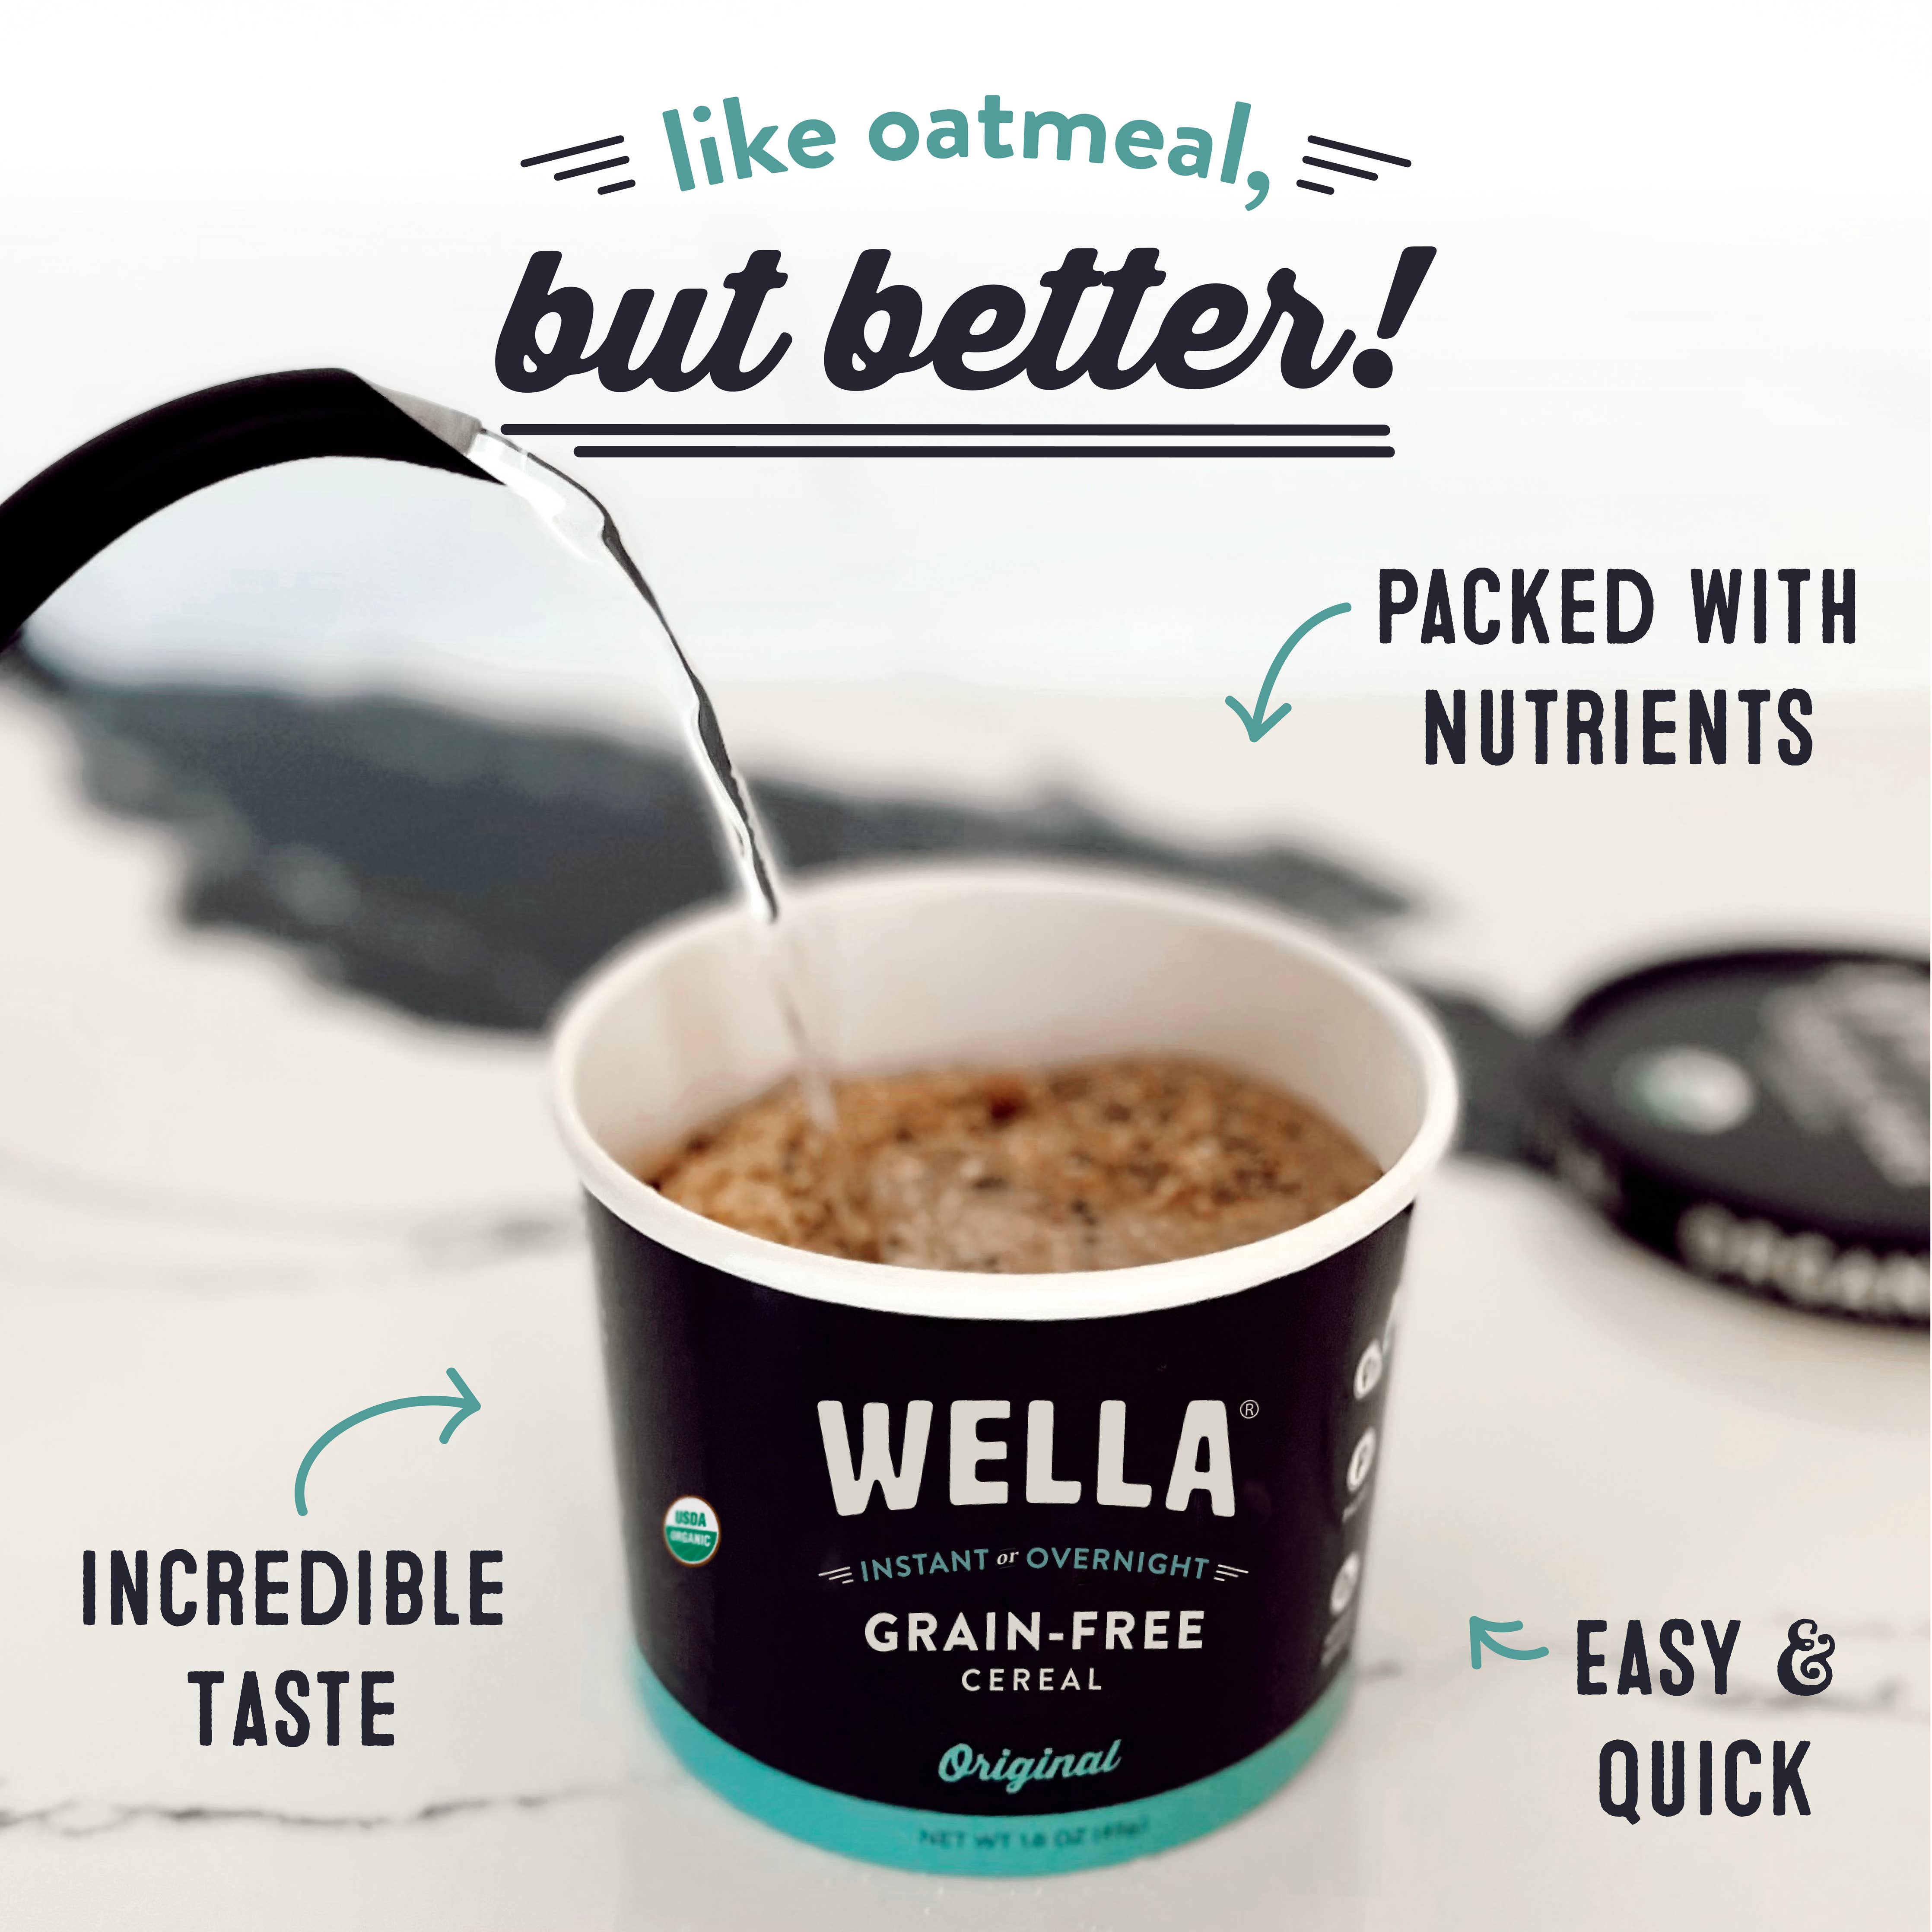 Wella Grain-Free Cereal Original Cup